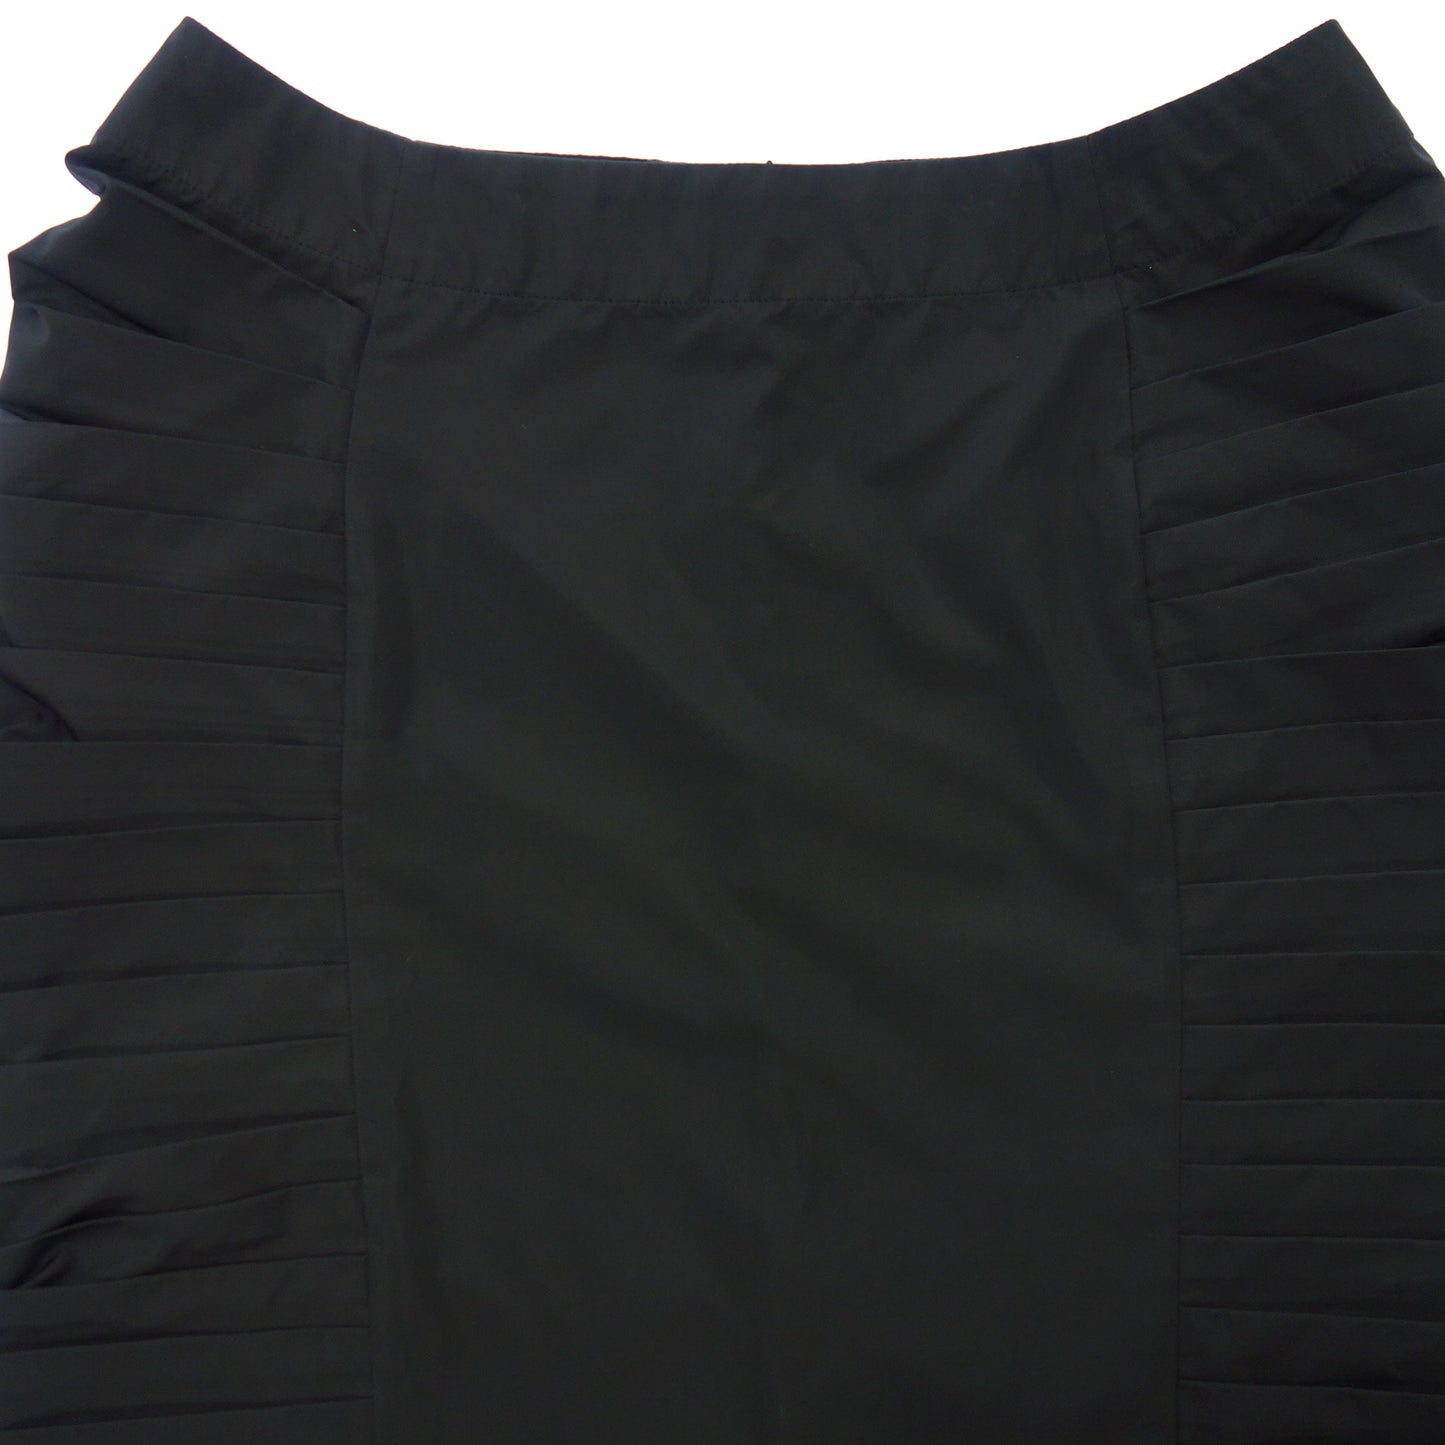 状况良好◆Issey Miyake 裙子侧褶样品产品女式黑色 ISSEY MIYAKE [AFB6] 